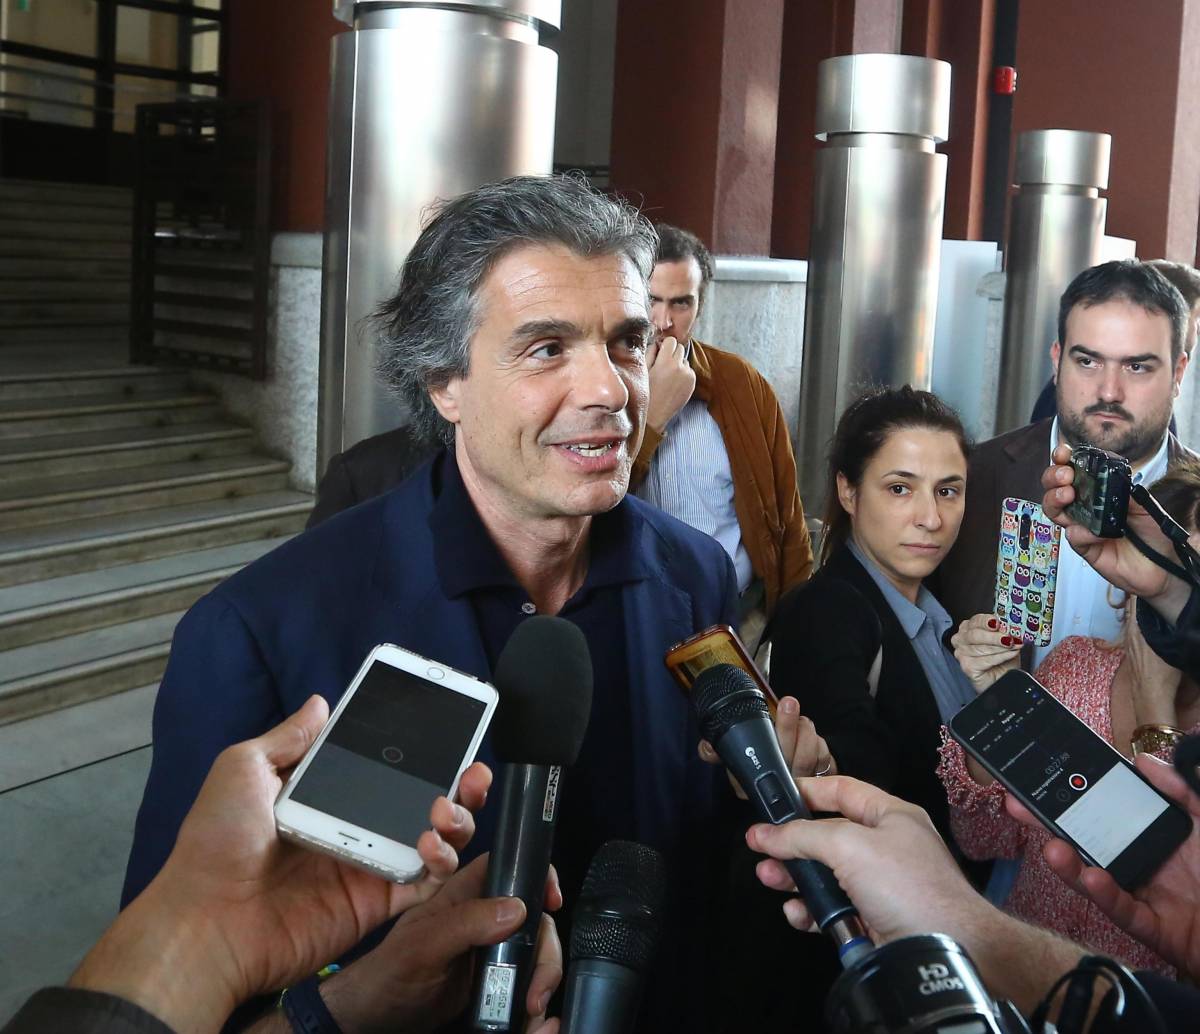 Marchini vede il ballottaggio: "Roma non voterà i traditori"